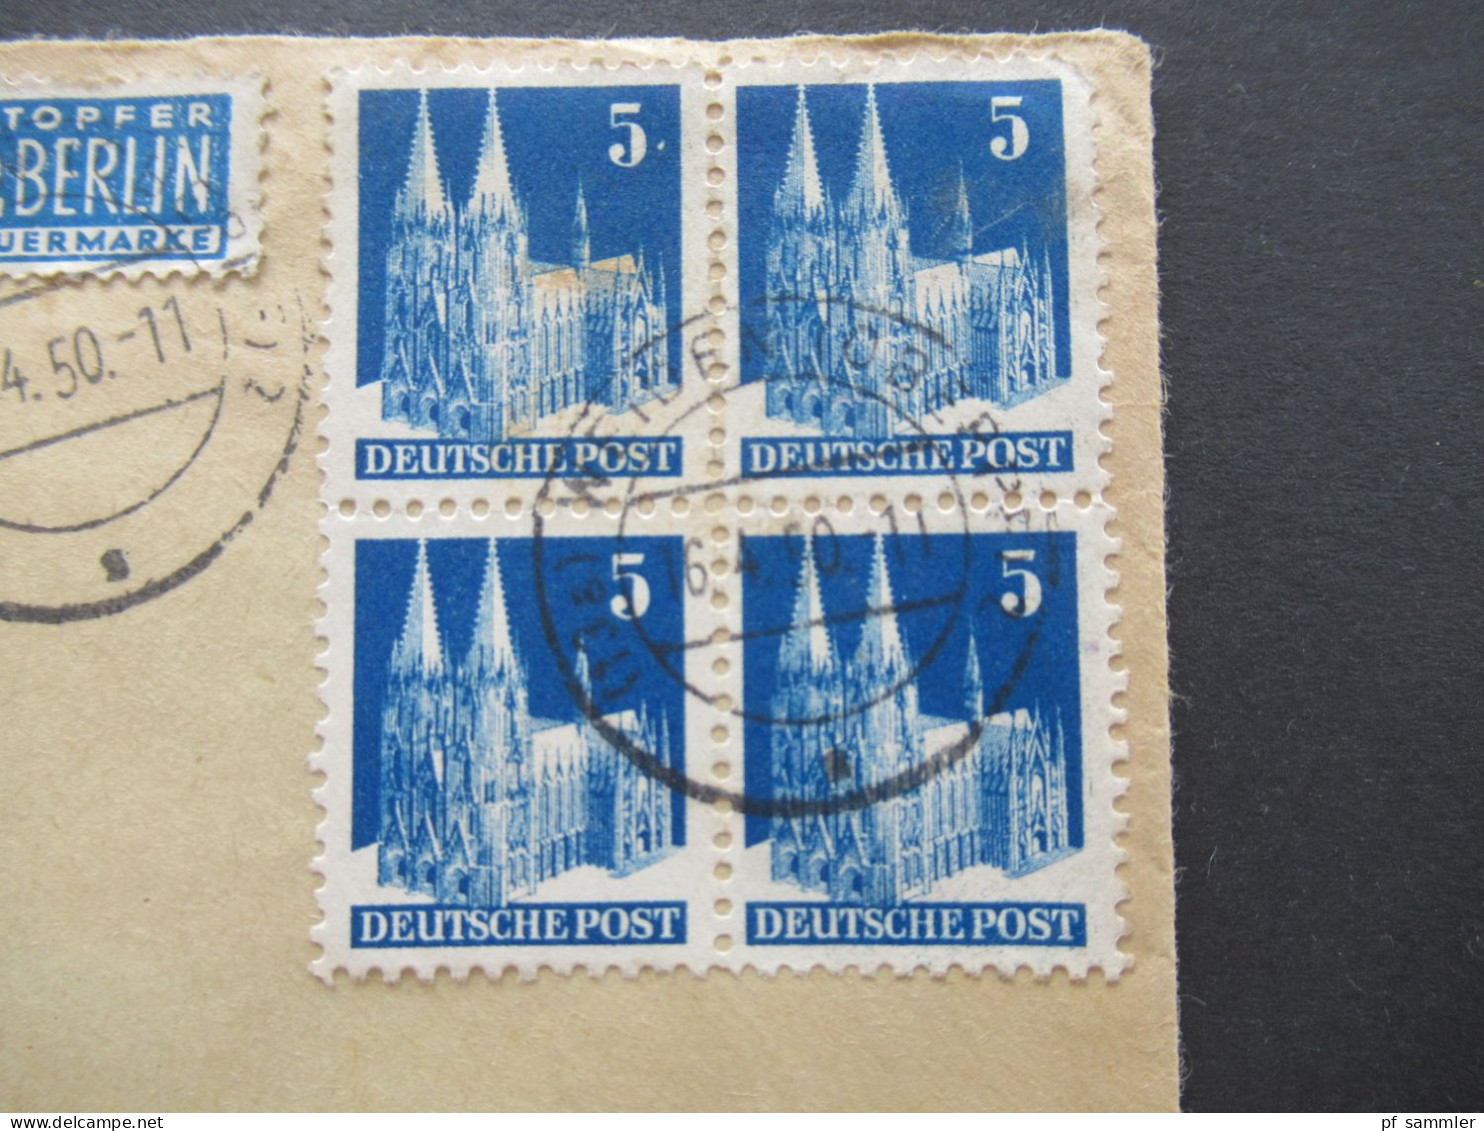 1950 Bizone Bauten Nr.75 (4) MeF Als Viererblock Umschlag Dr. Med. J. Huber Geburtshelfer Weiden Opf. Nach Metten - Brieven En Documenten